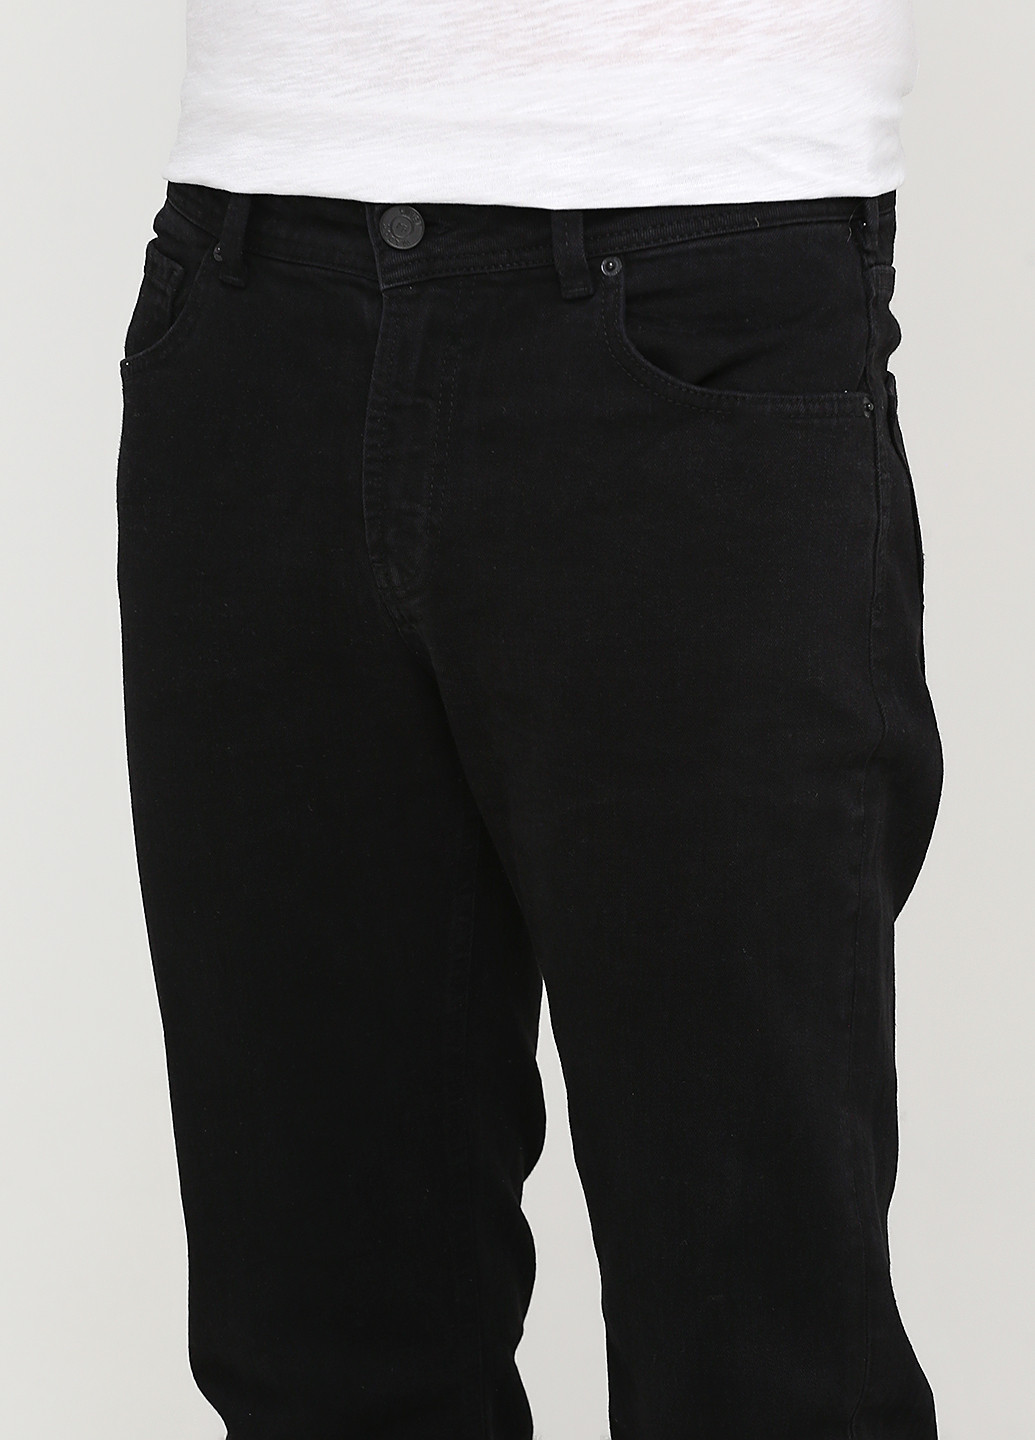 Черные демисезонные прямые джинсы Madoc Jeans